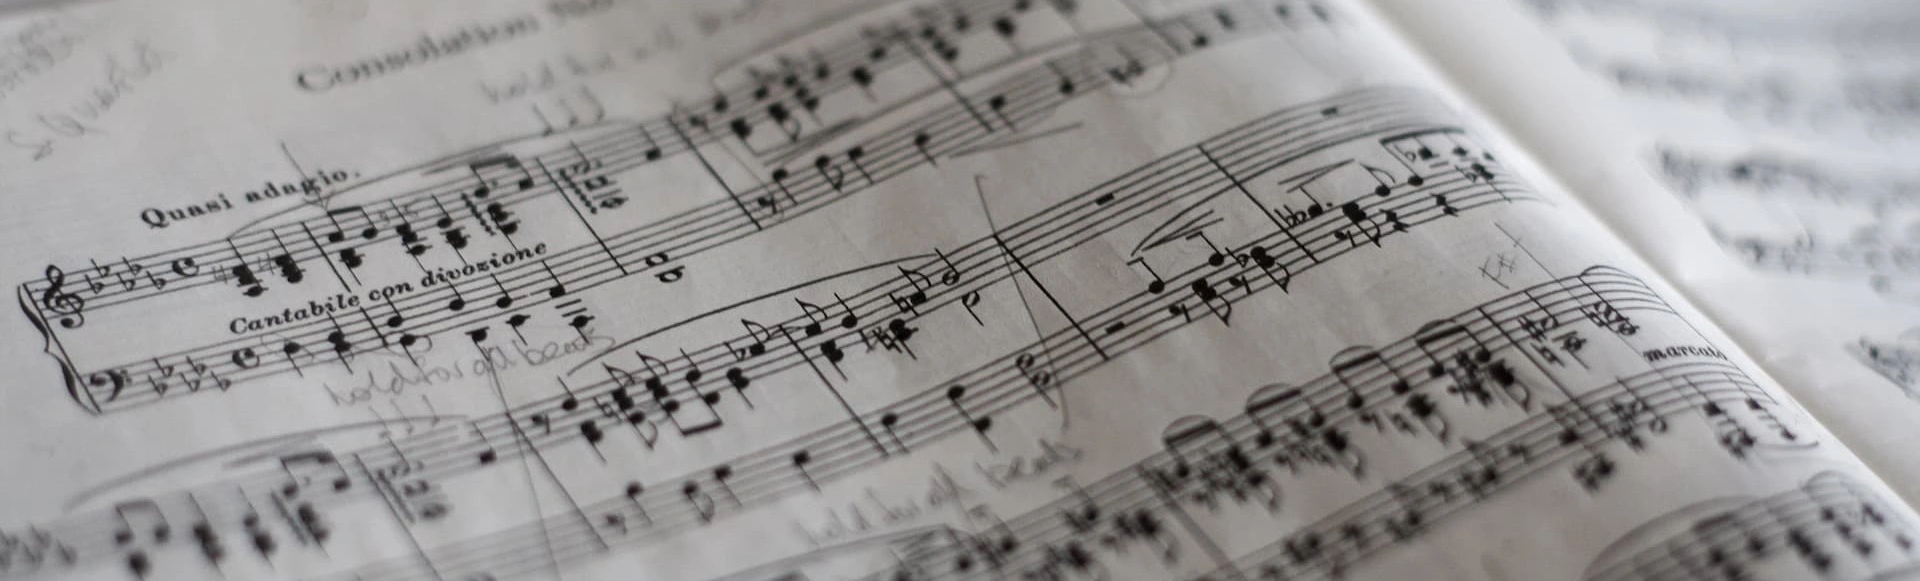 Երաժշտության հմայքը և զգացմունքային ապրումները. համերգը «Y.S. Bach - French Suites» նոյեմբերի 22-ին Երևանում։